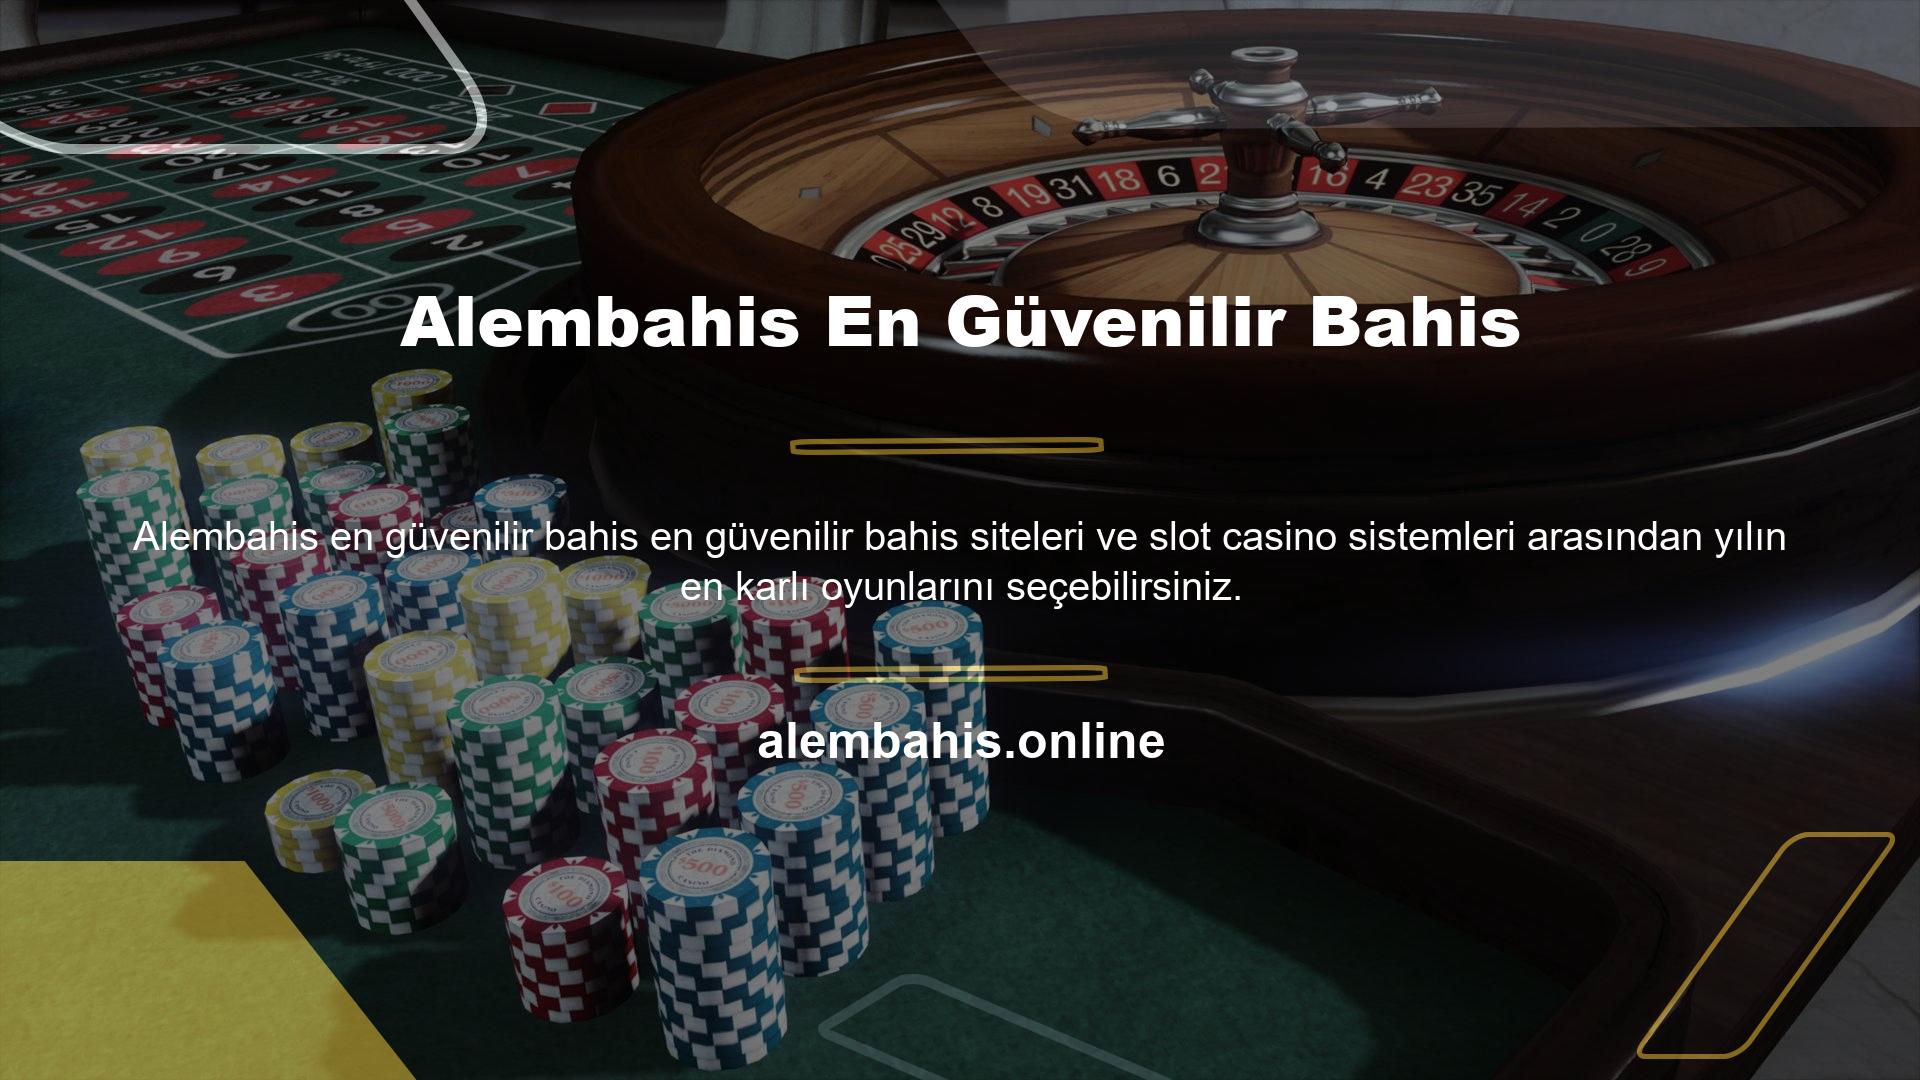 Alembahis, aradığınız tüm slot ve canlı casino oyunlarını sunan deneyimli bir ekibe sahip yasa dışı bir bahis şirketidir